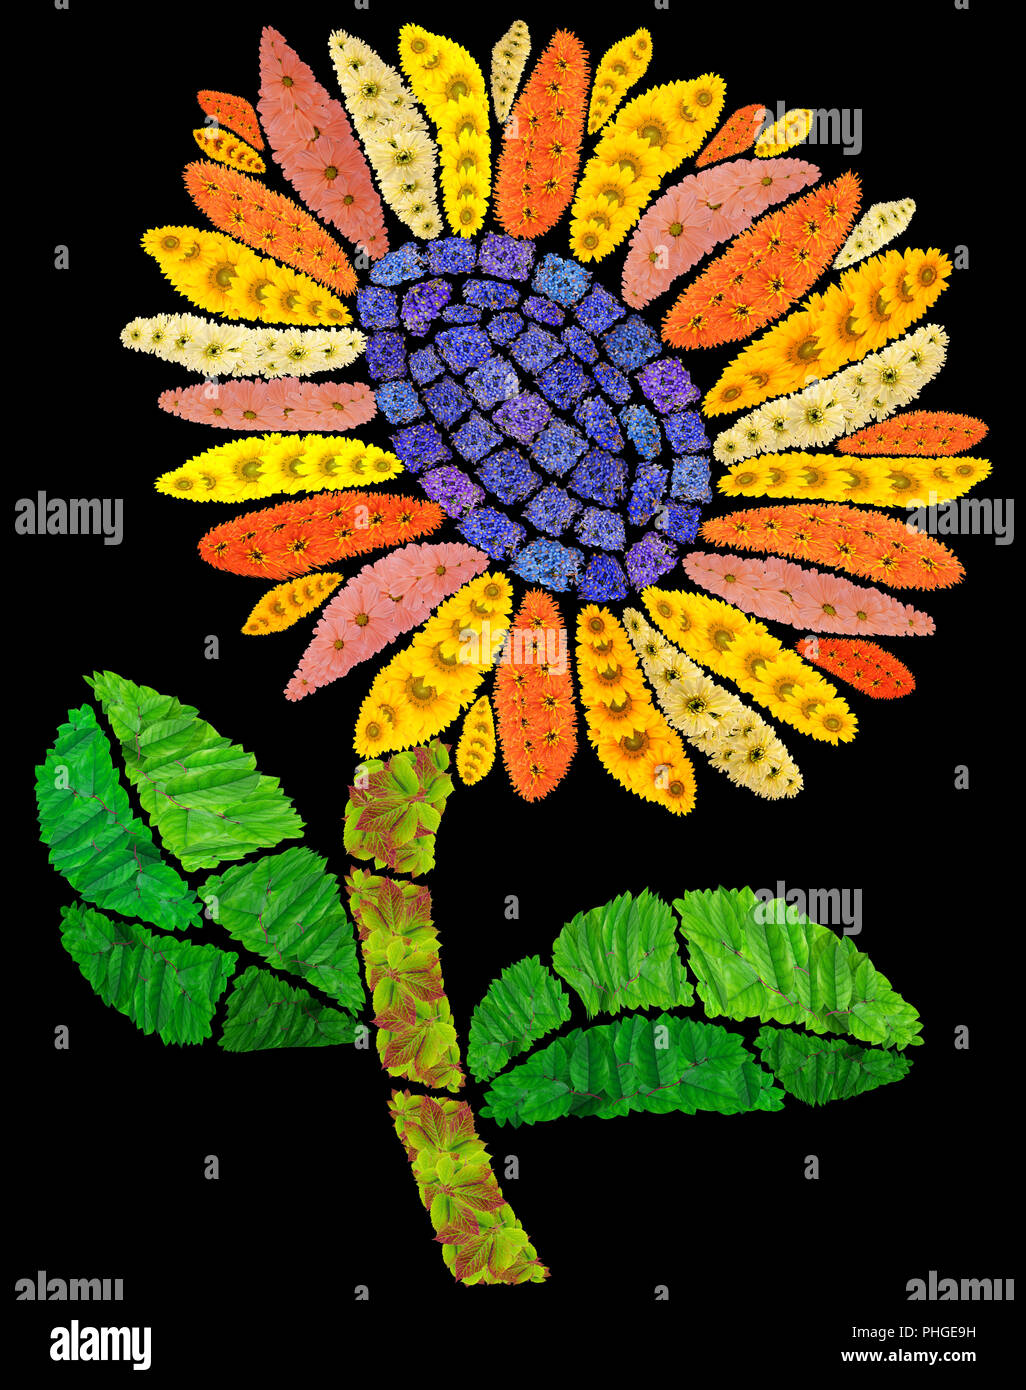 Mosaic sunflower in night Stock Photo